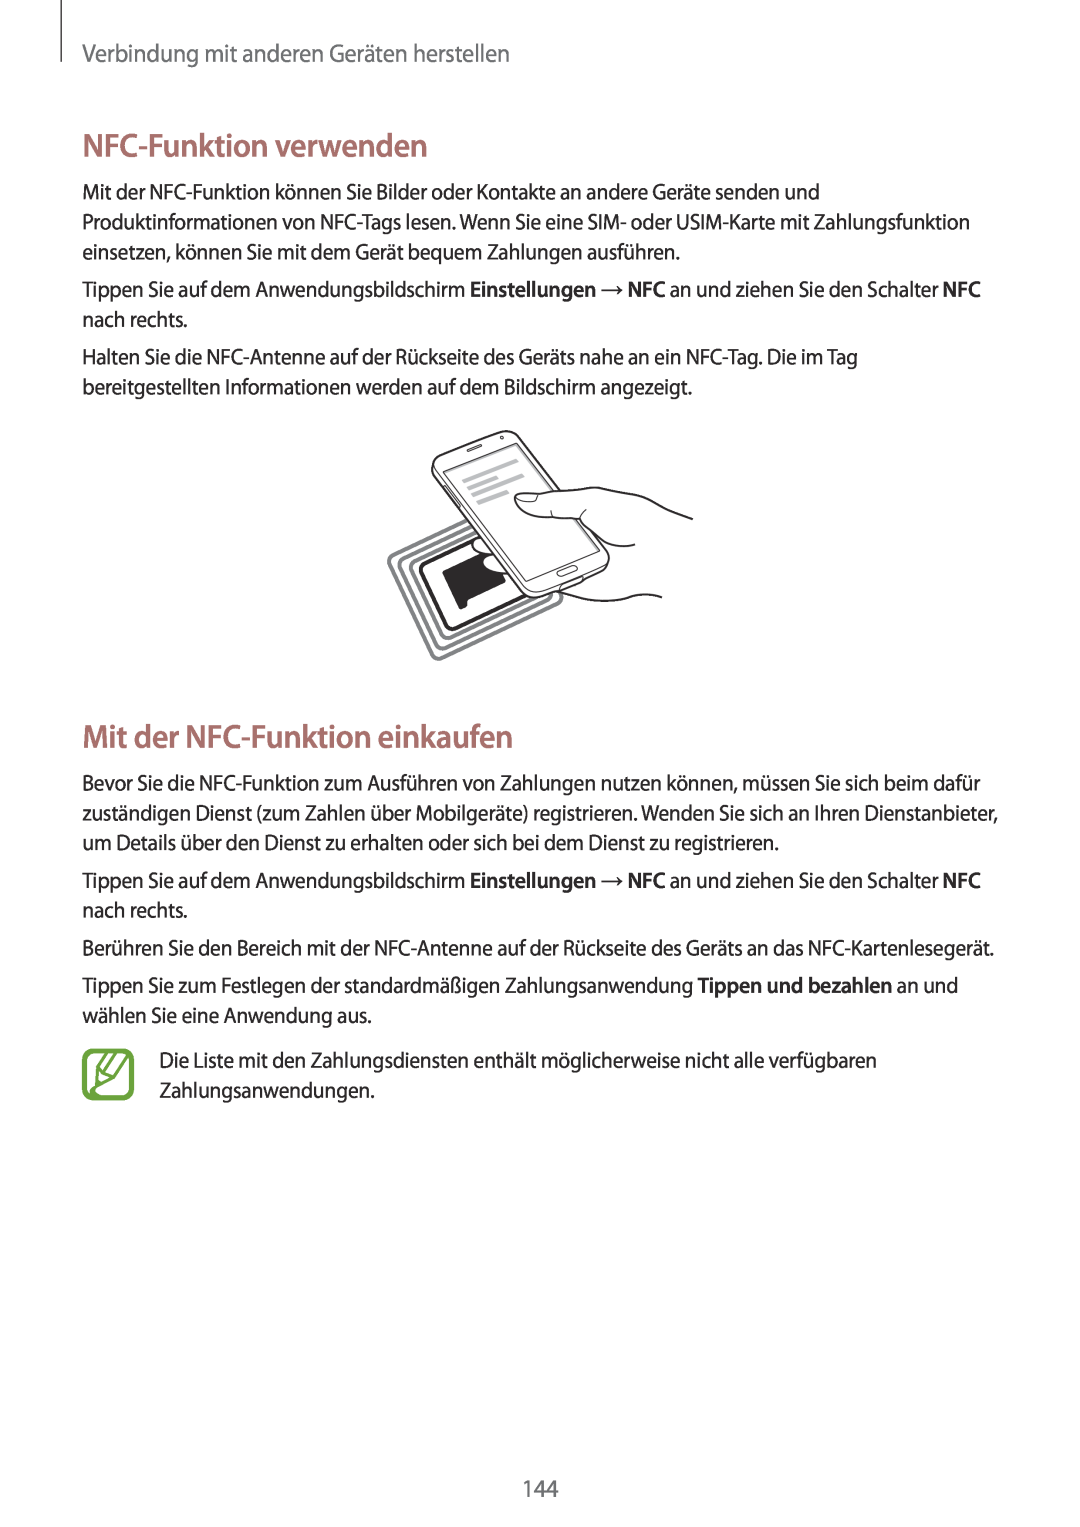 Samsung SM-G901FZKABAL NFC-Funktion verwenden, Mit der NFC-Funktion einkaufen, Verbindung mit anderen Geräten herstellen 